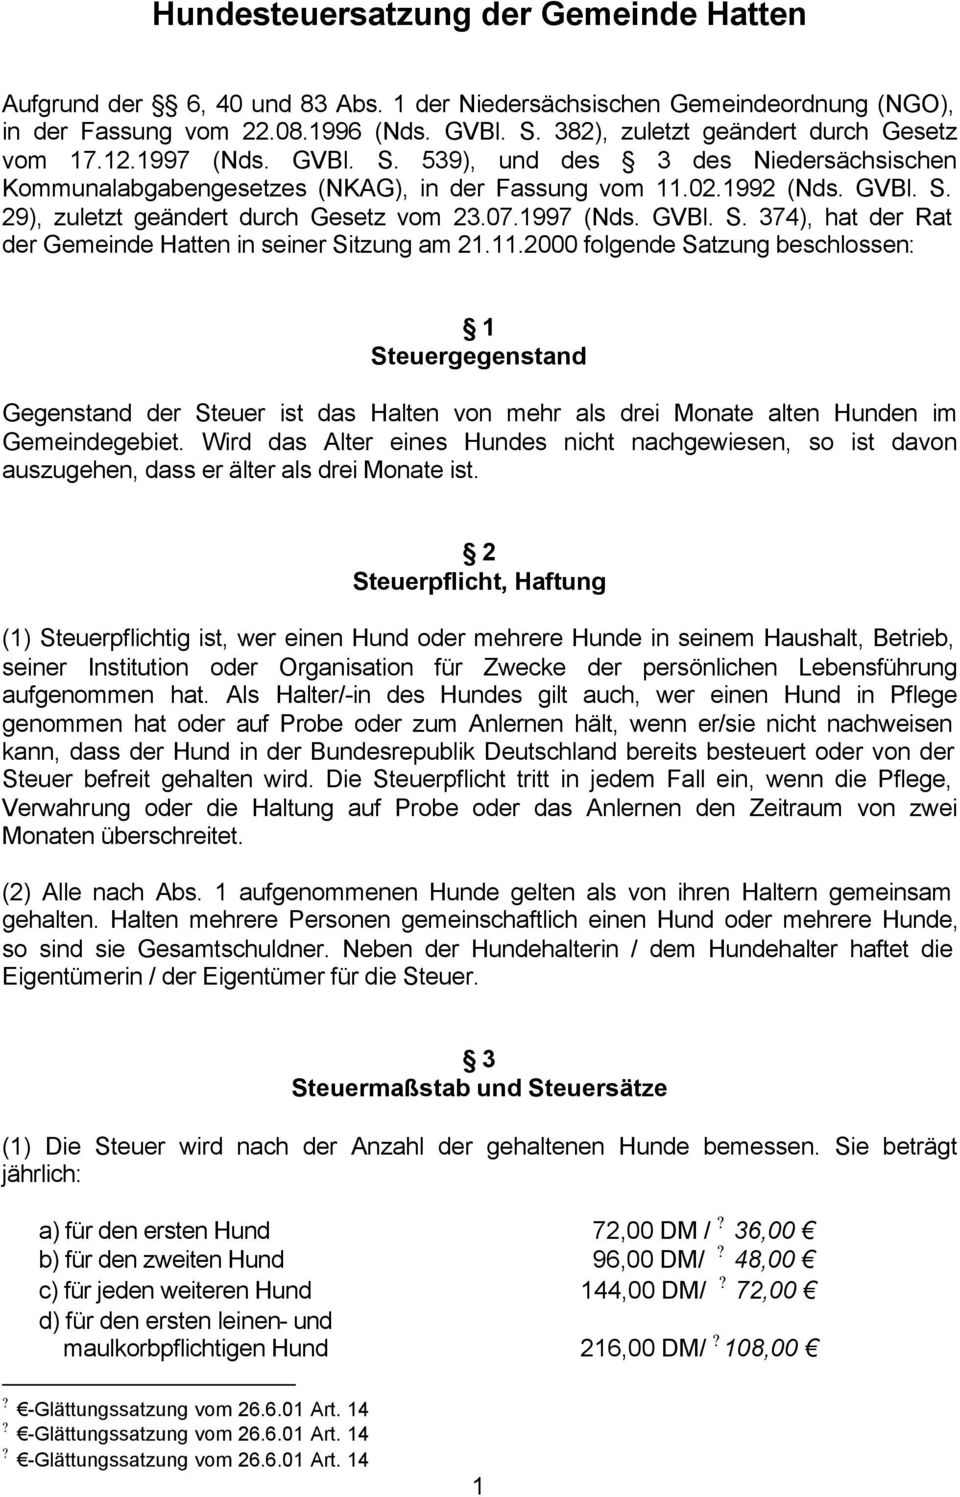 07.1997 (Nds. GVBl. S. 374), hat der Rat der Gemeinde Hatten in seiner Sitzung am 21.11.